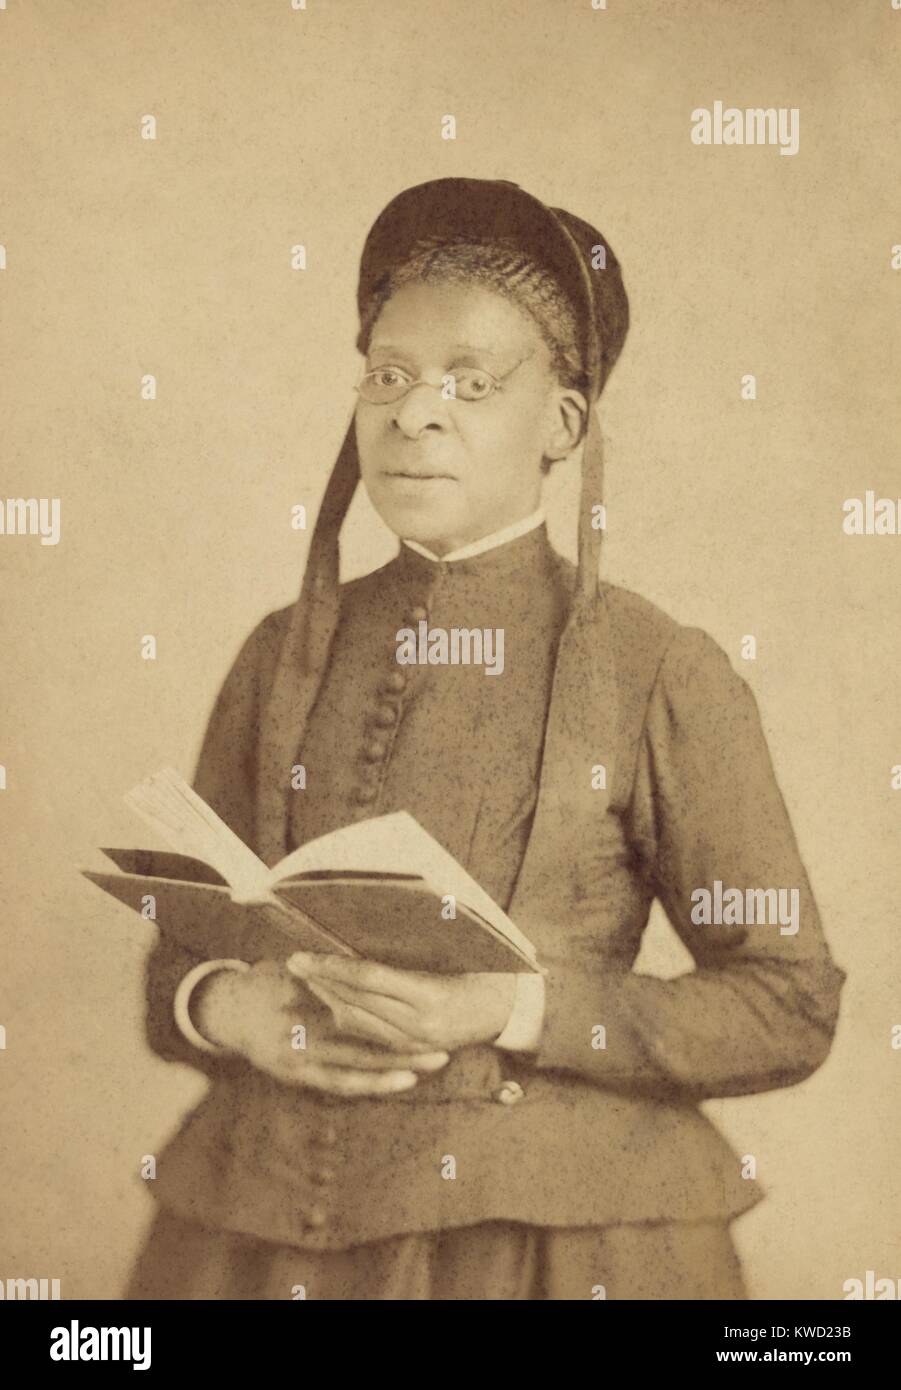 Ritratto di un Africano donna americana, indossa gli occhiali, e poste con Libro, c. 1880-1900. La fotografia è stata fatta da Bostwick il cui indirizzo è stato 98 Sesta Avenue, New York City (BSLOC 2017 20 117) Foto Stock